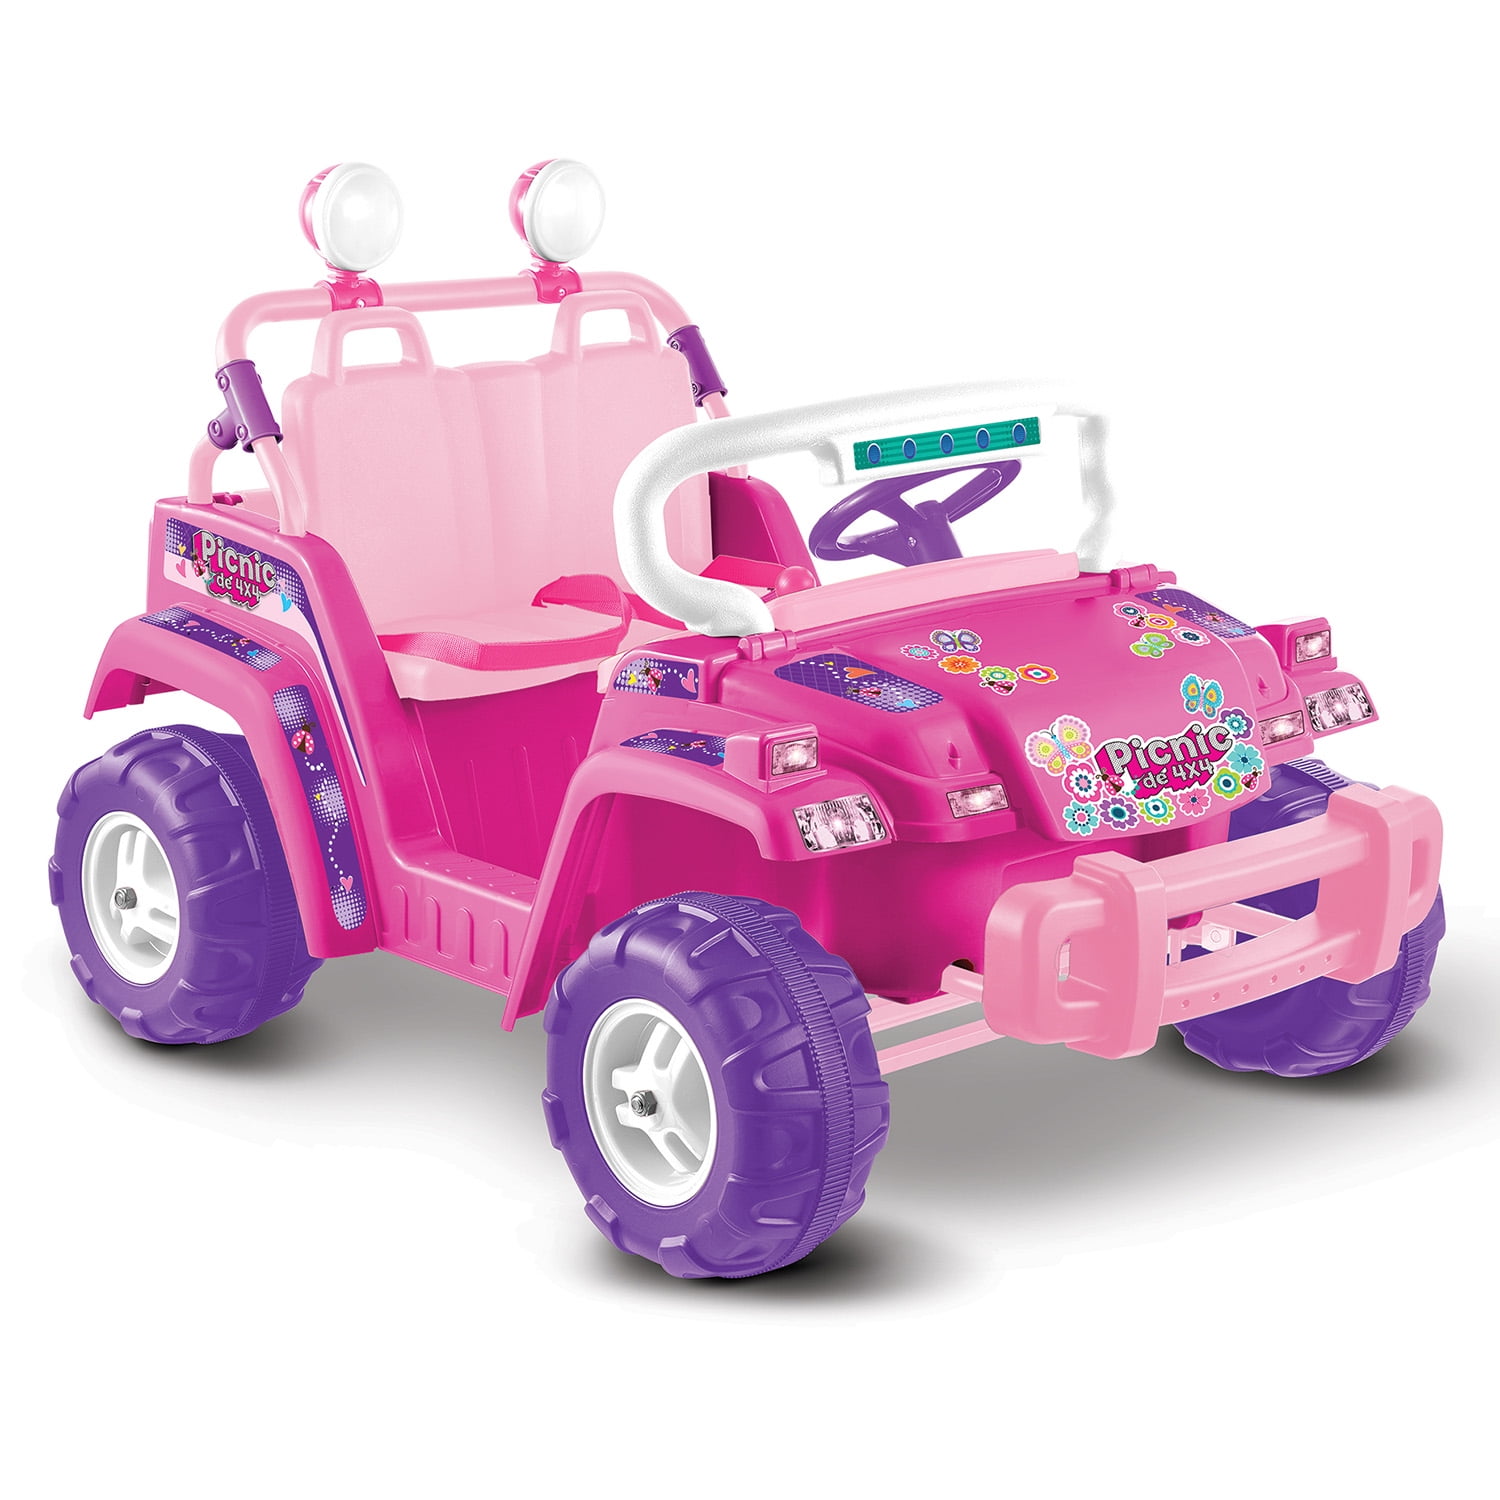 Kid Motorz 6V Trikes Rider in Pink - Walmart.com